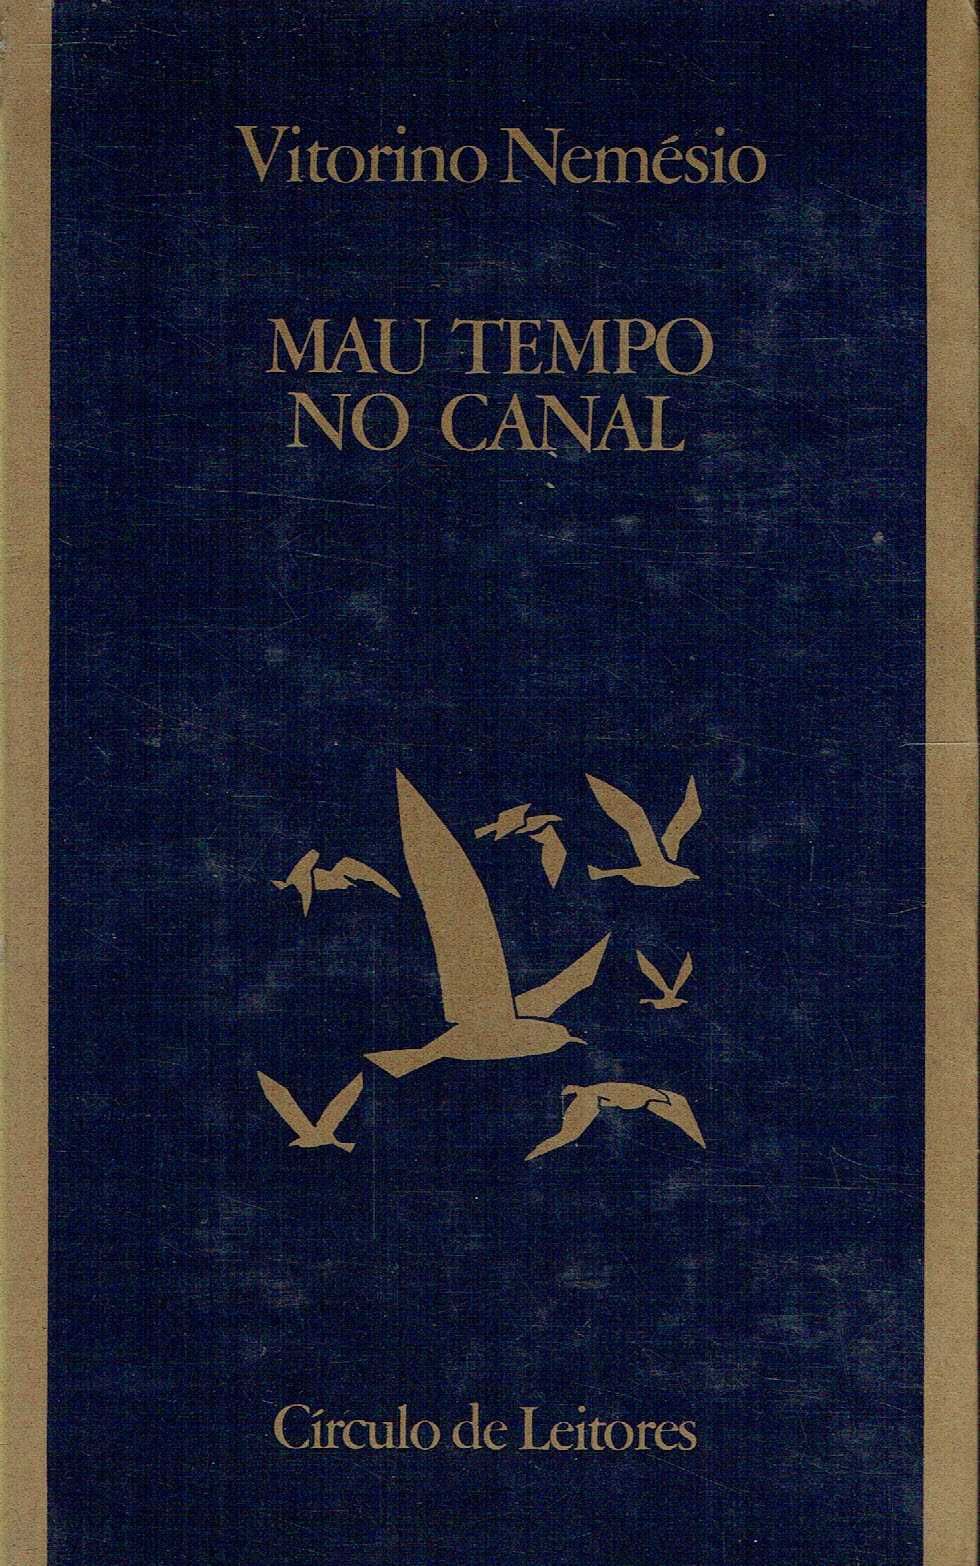 7397

Mau Tempo no Canal
de Vitorino Nemésio